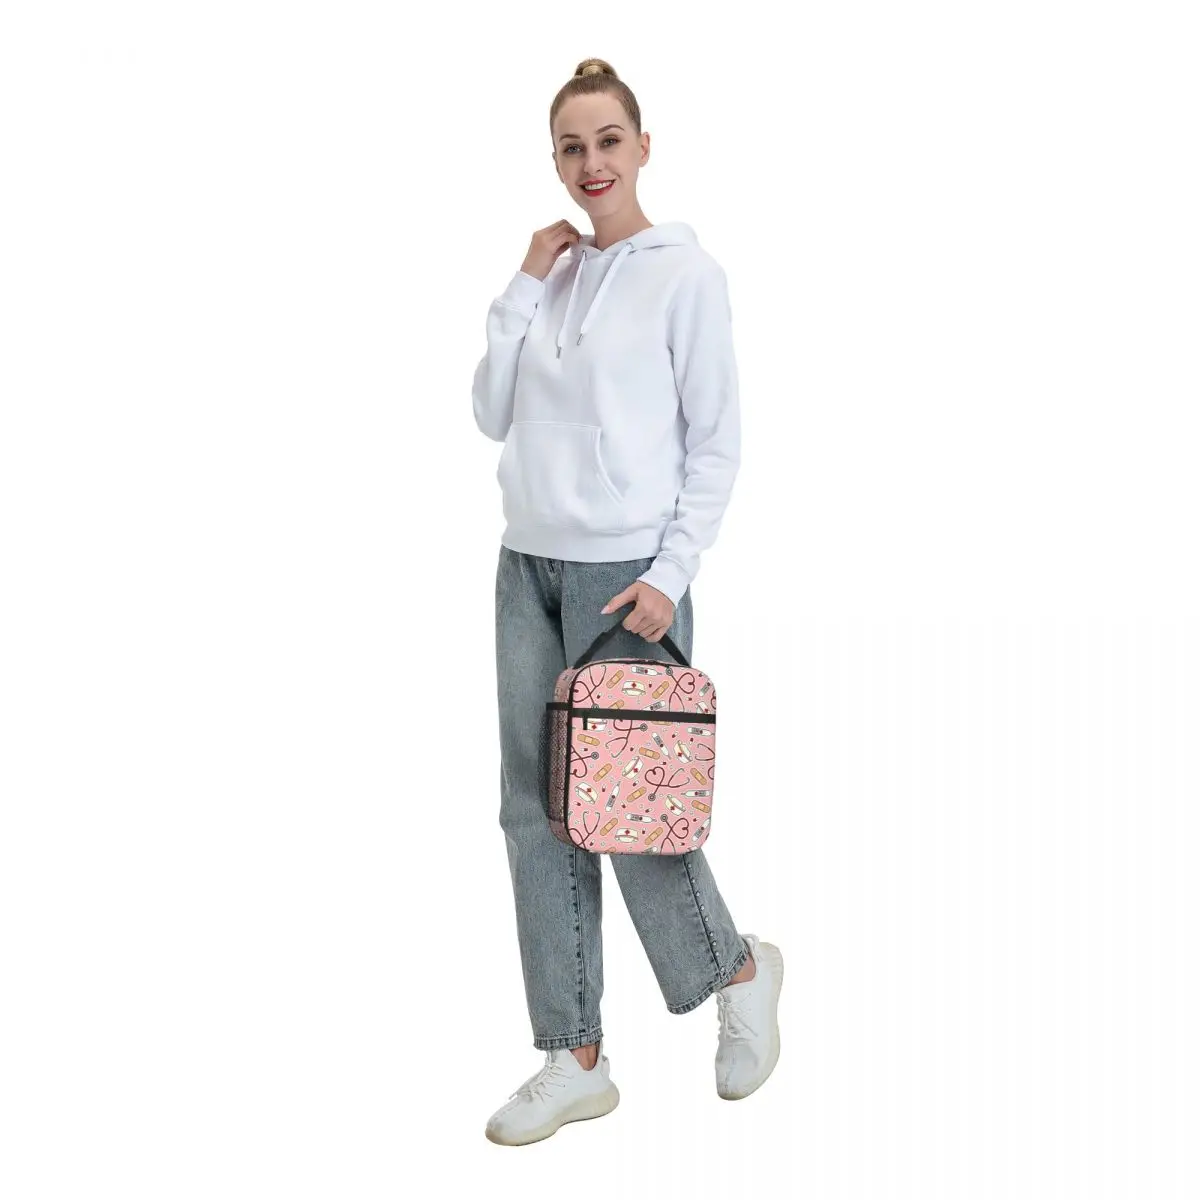 Изготовленная на Заказ Розовая Мультяшная сумка для ланча медсестры, женский кулер, теплый Изолированный ланч-бокс для детей, школьников